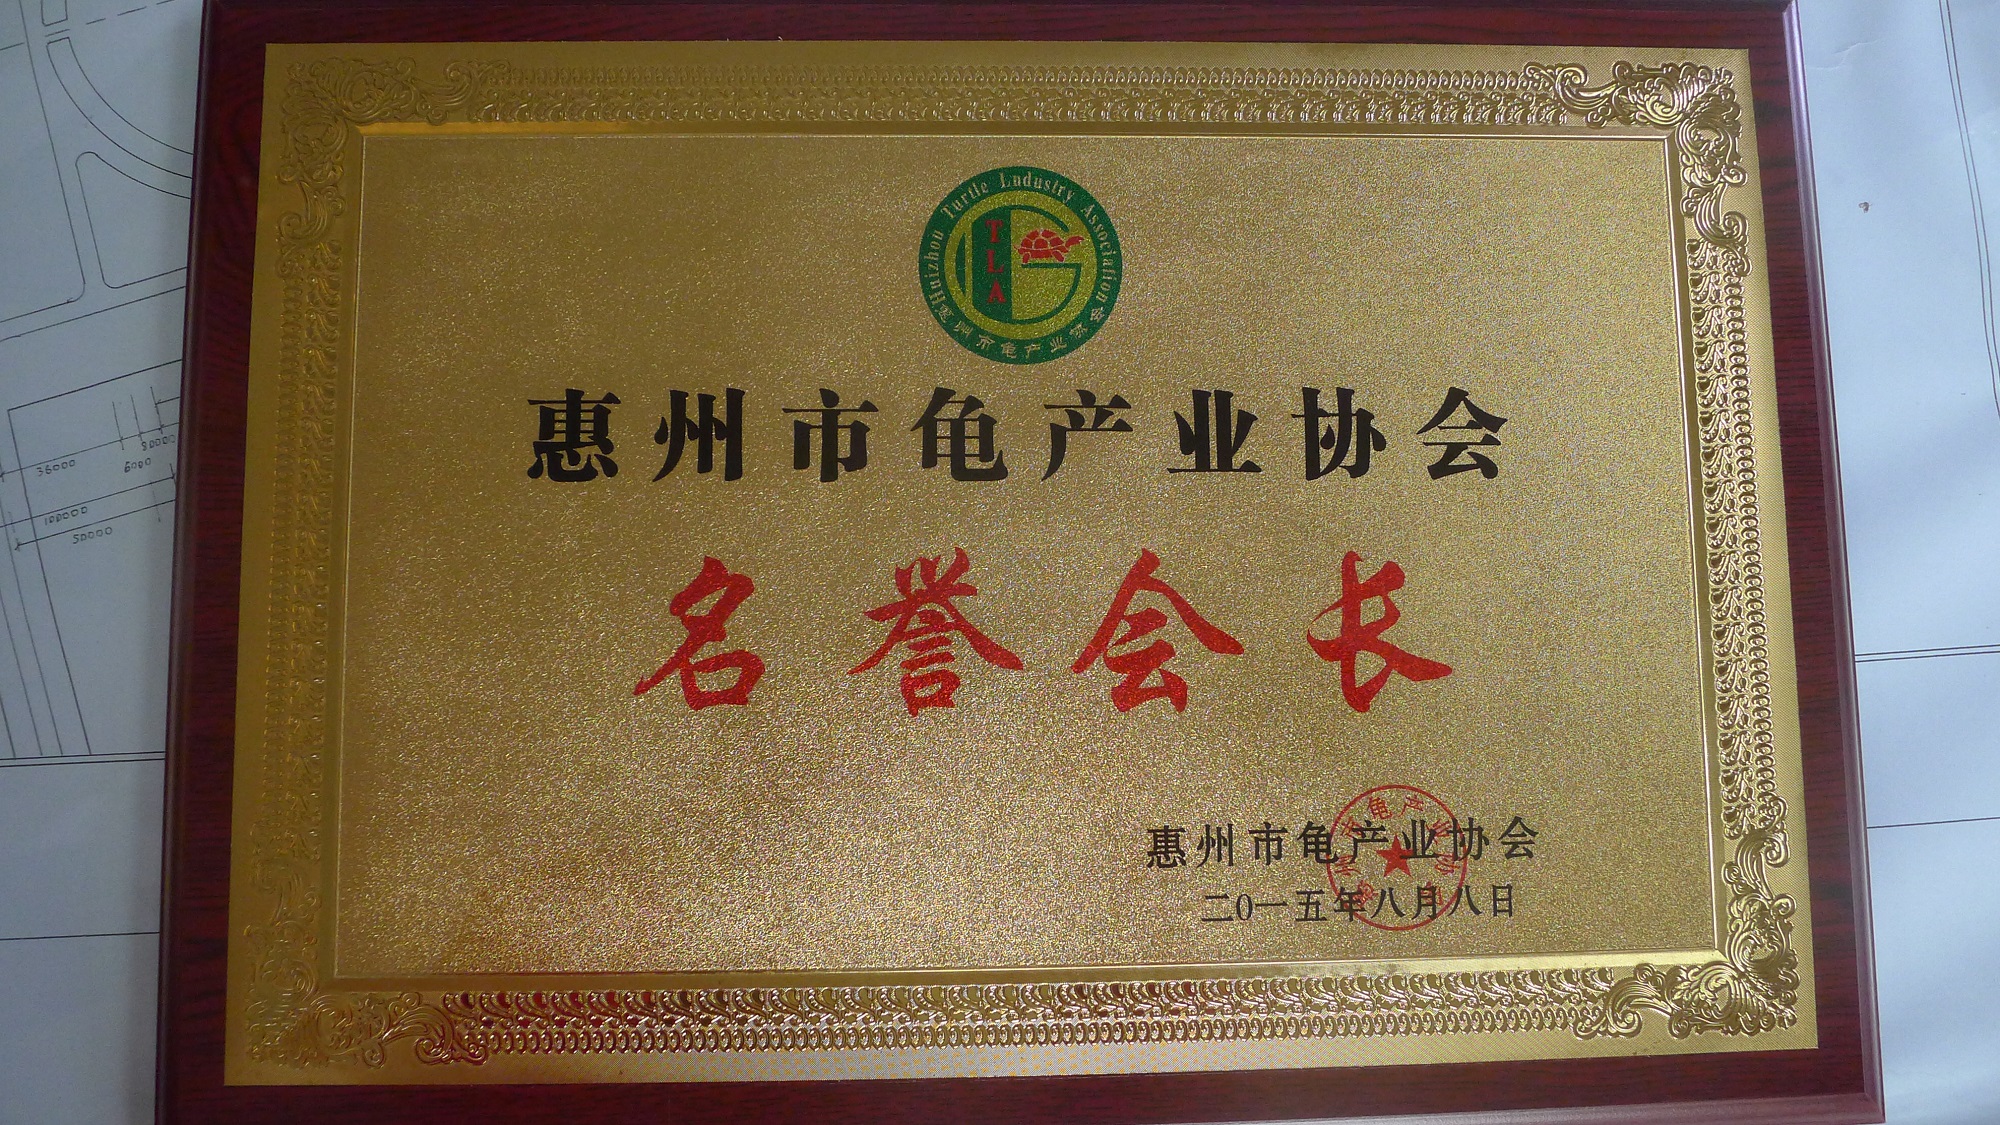 惠州市龟产业协会名誉会长牌匾